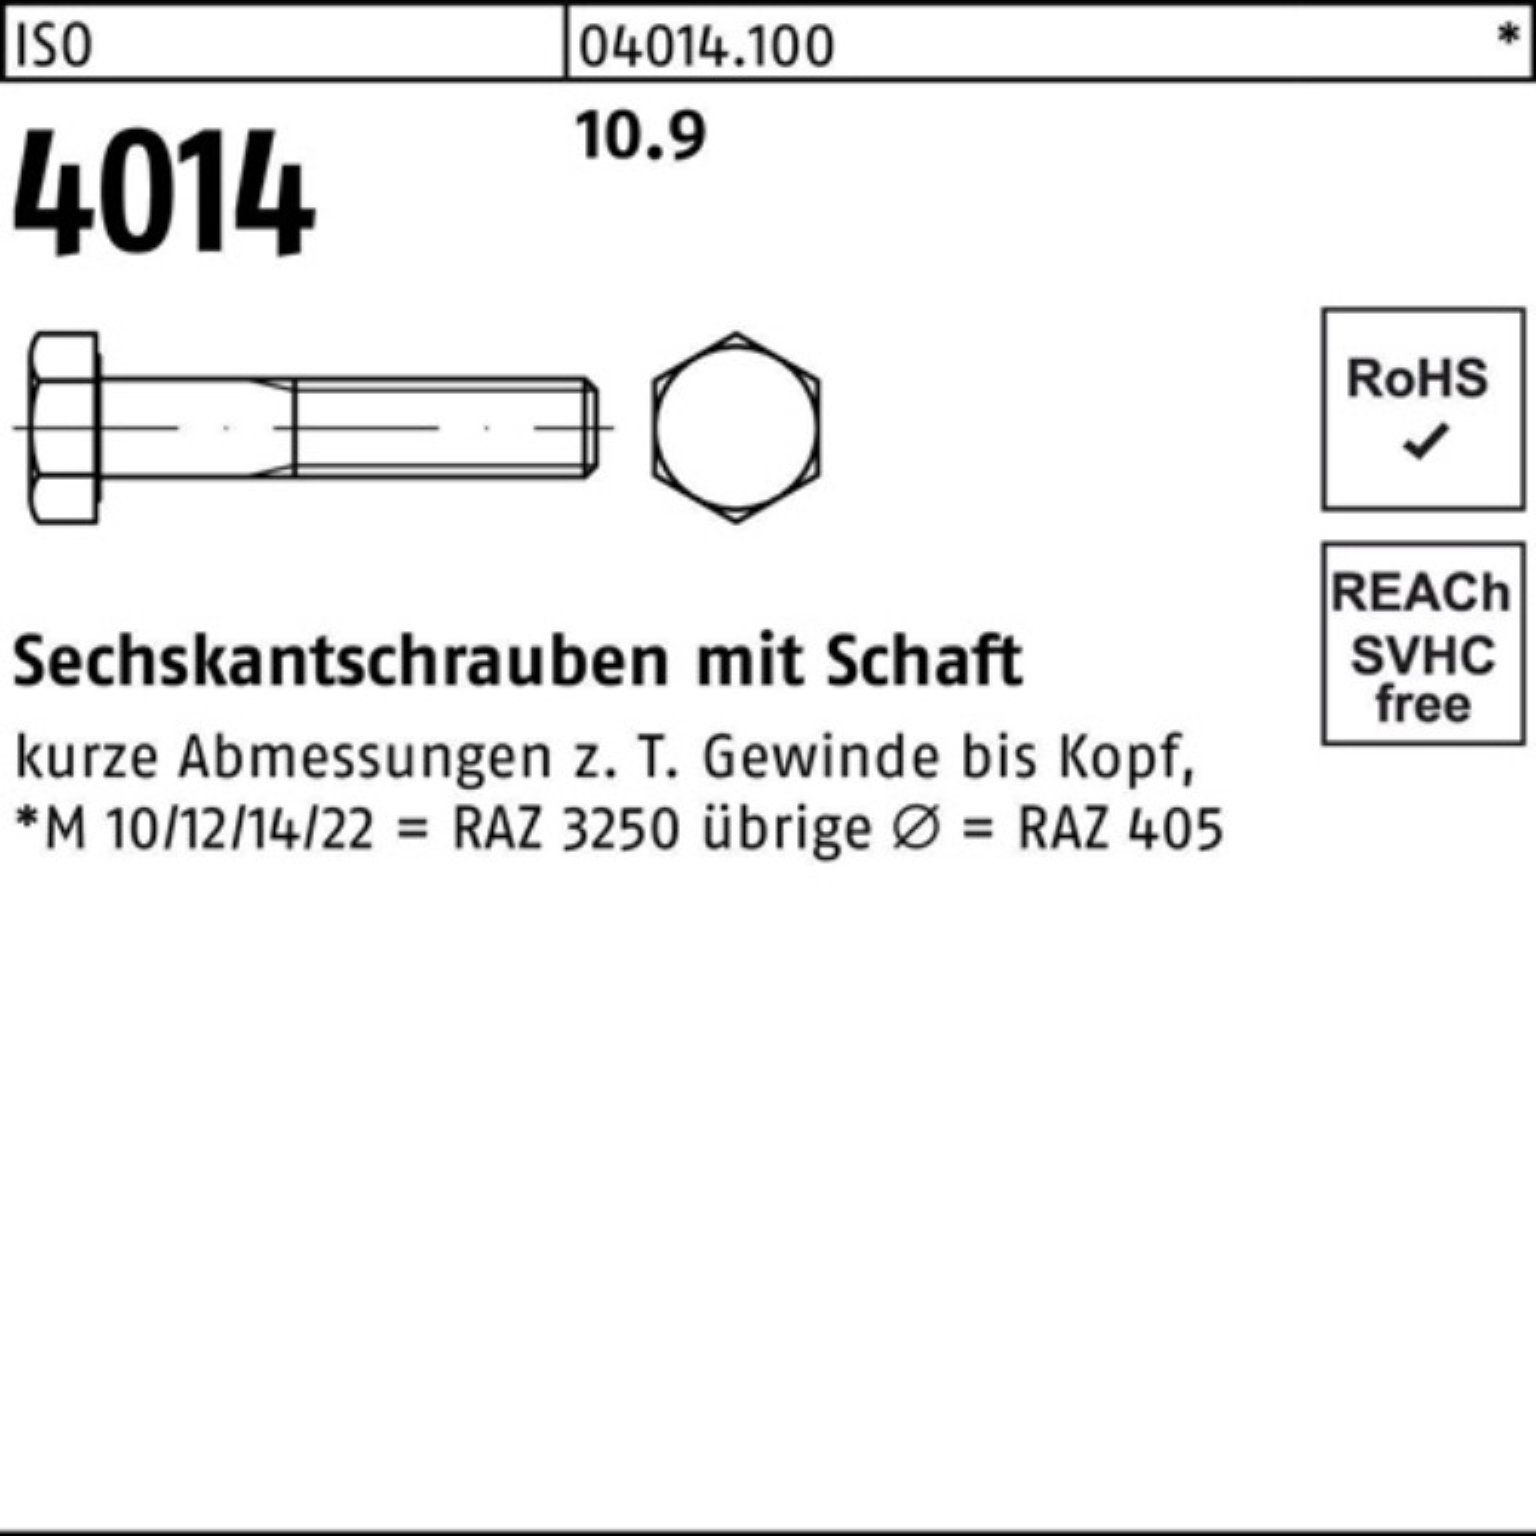 Schaft Stück ISO IS Pack 1 Sechskantschraube M33x 4014 150 100er 10.9 Sechskantschraube Bufab